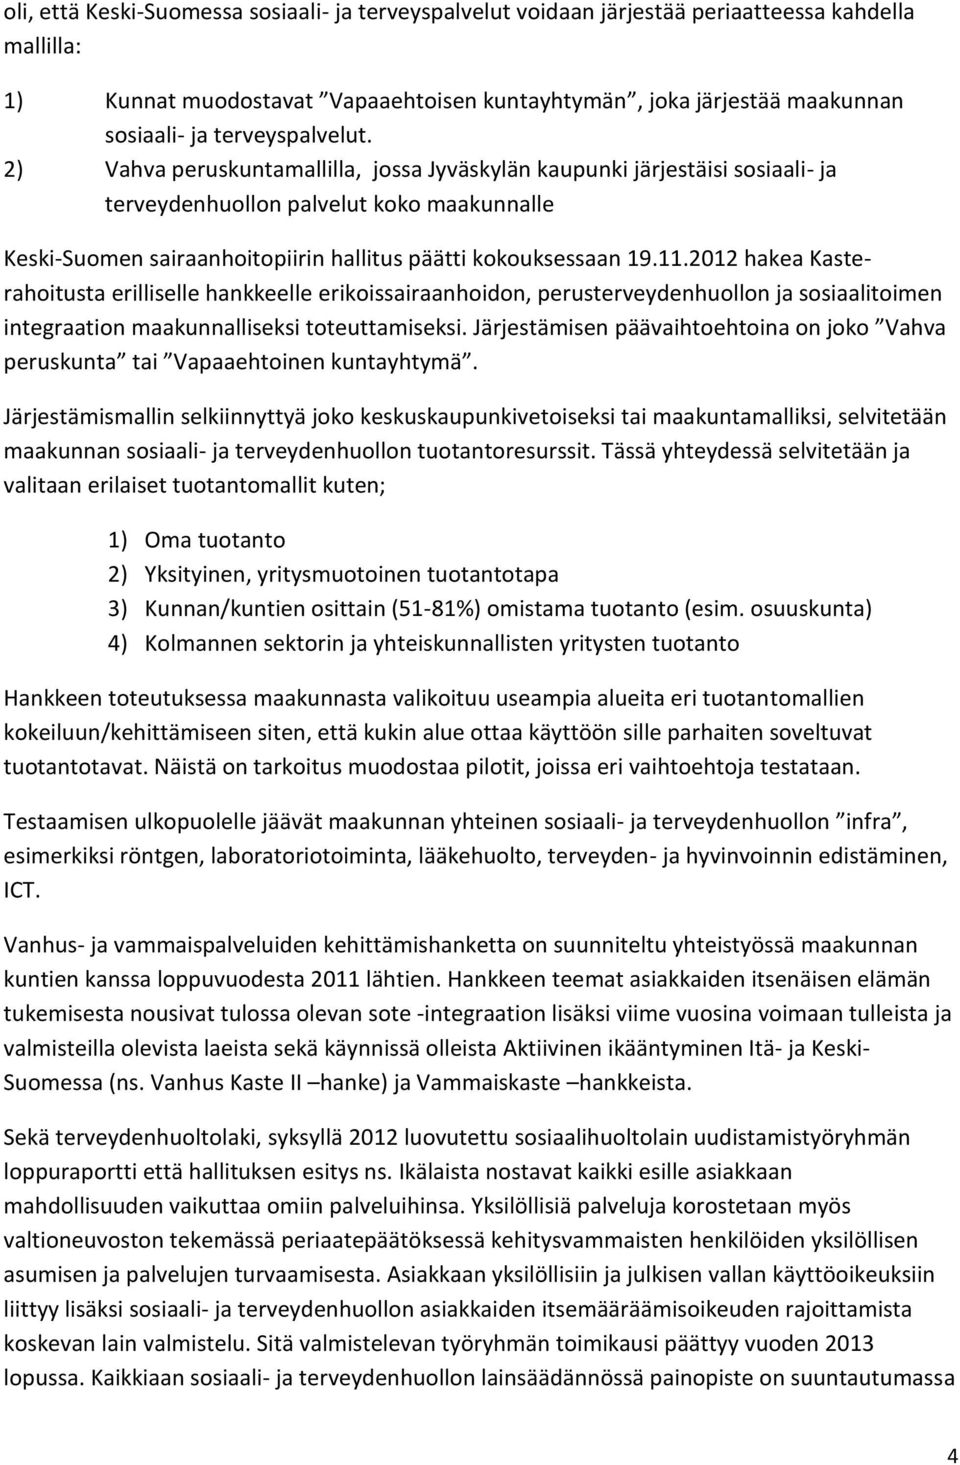 2) Vahva peruskuntamallilla, jossa Jyväskylän kaupunki järjestäisi sosiaali- ja terveydenhuollon palvelut koko maakunnalle Keski-Suomen sairaanhoitopiirin hallitus päätti kokouksessaan 19.11.